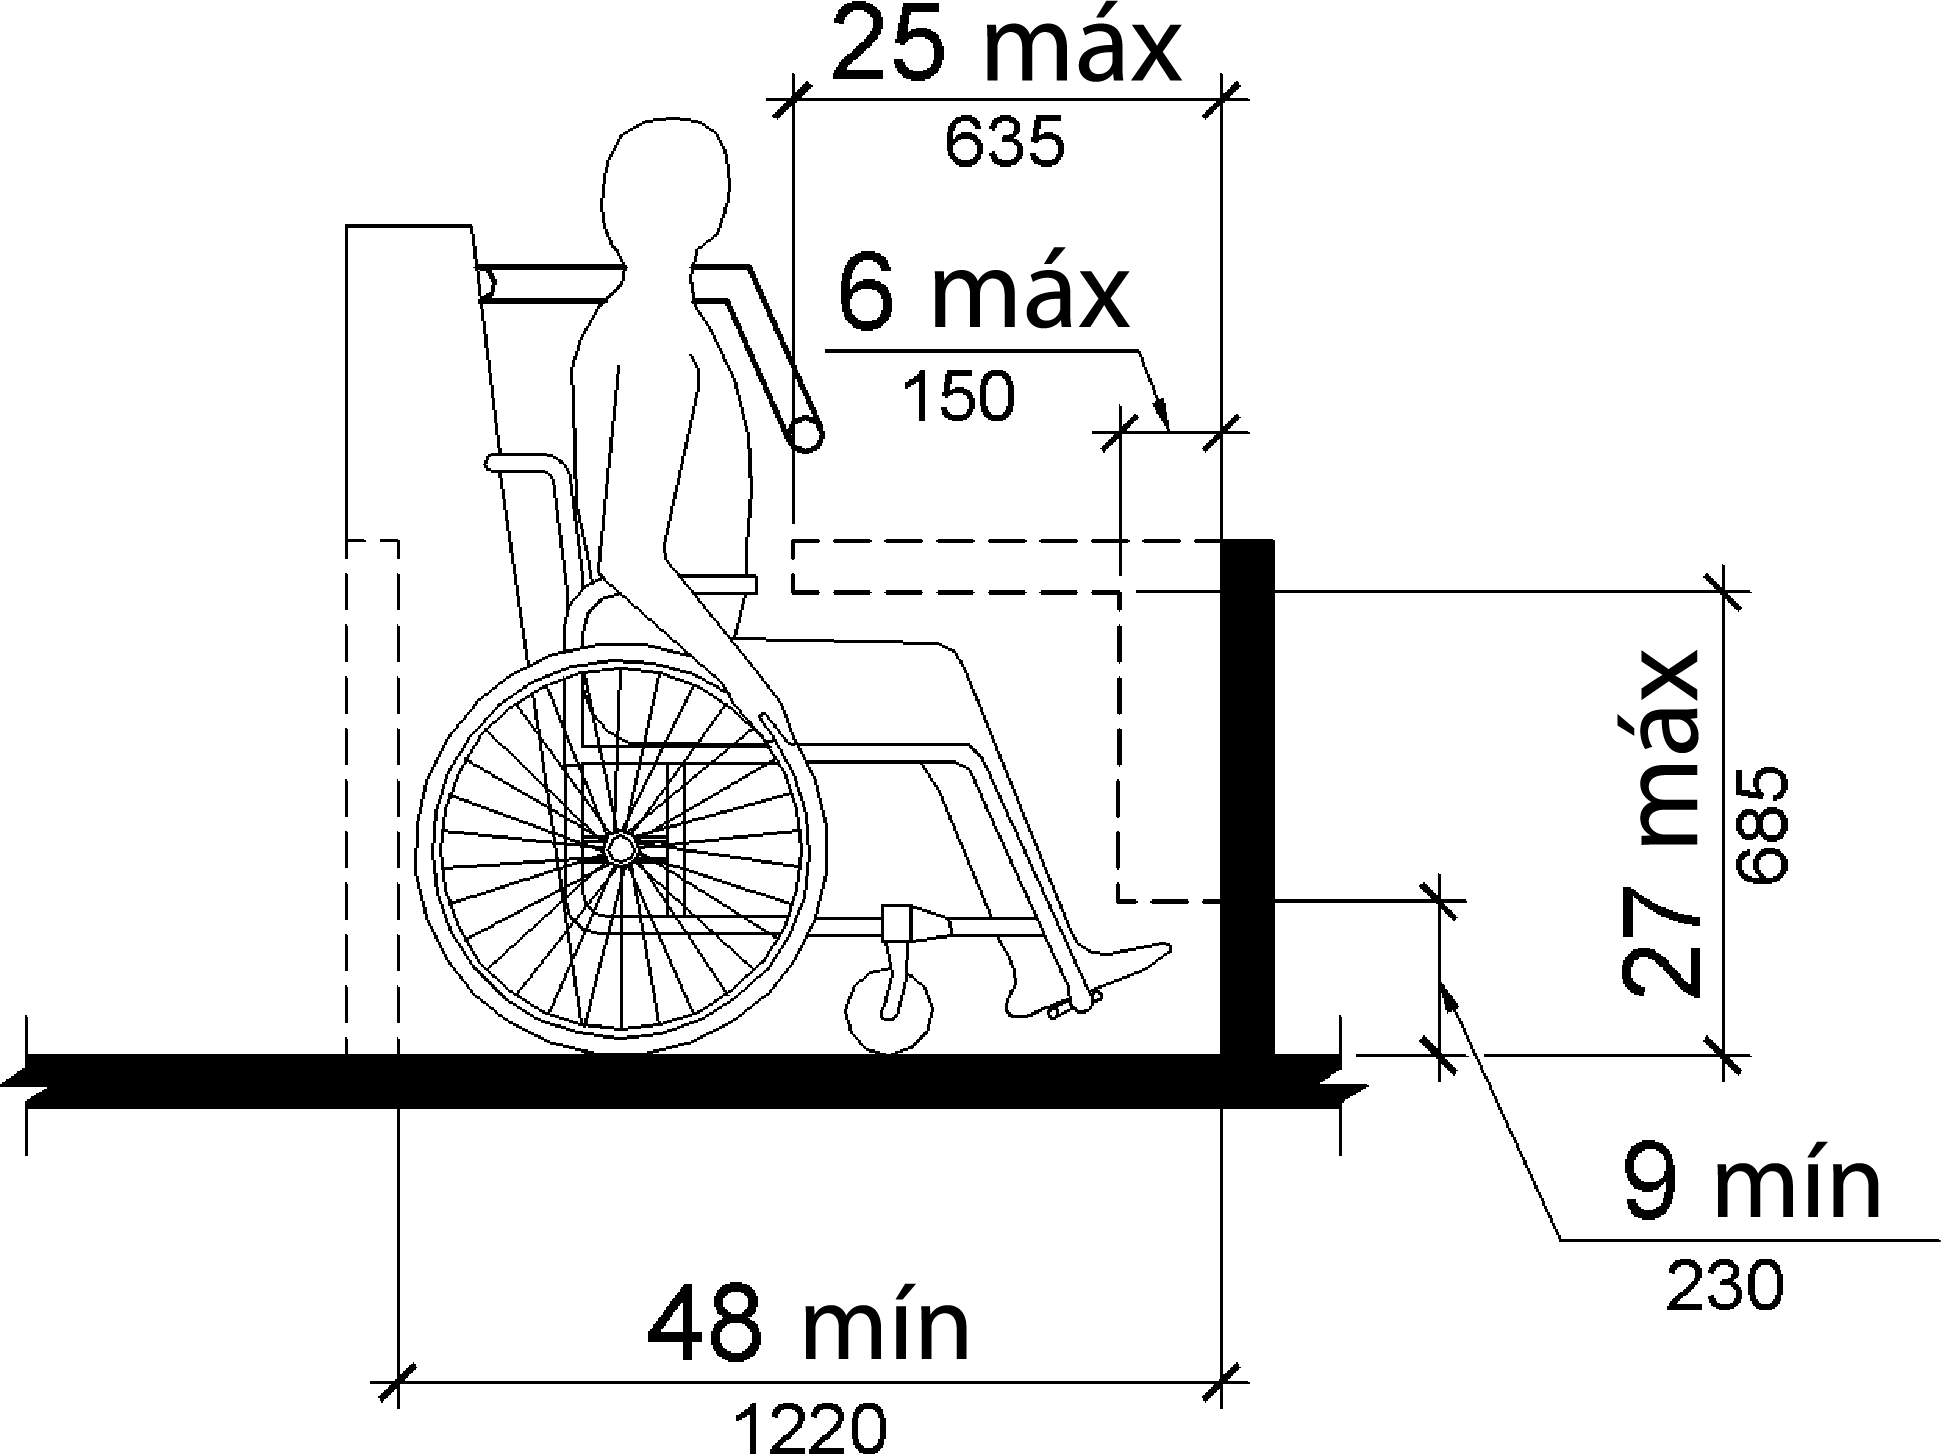 Un dibujo de elevación de una persona sentada en una silla de ruedas en un paseo de diversión muestra que los objetos pueden sobresalir 6 pulgadas (150 mm) como máximo a lo largo de la parte delantera del espacio para sillas de ruedas donde se encuentran 9 pulgadas (230 mm) como mínimo y 27 pulgadas (685 mm) como máximo sobre el piso o la superficie del suelo del espacio para sillas de ruedas.  Los objetos pueden sobresalir a una distancia de 25 pulgadas como máximo a lo largo de la parte delantera del espacio para sillas de ruedas, donde se encuentran a más de 27 pulgadas sobre el piso o la superficie del suelo